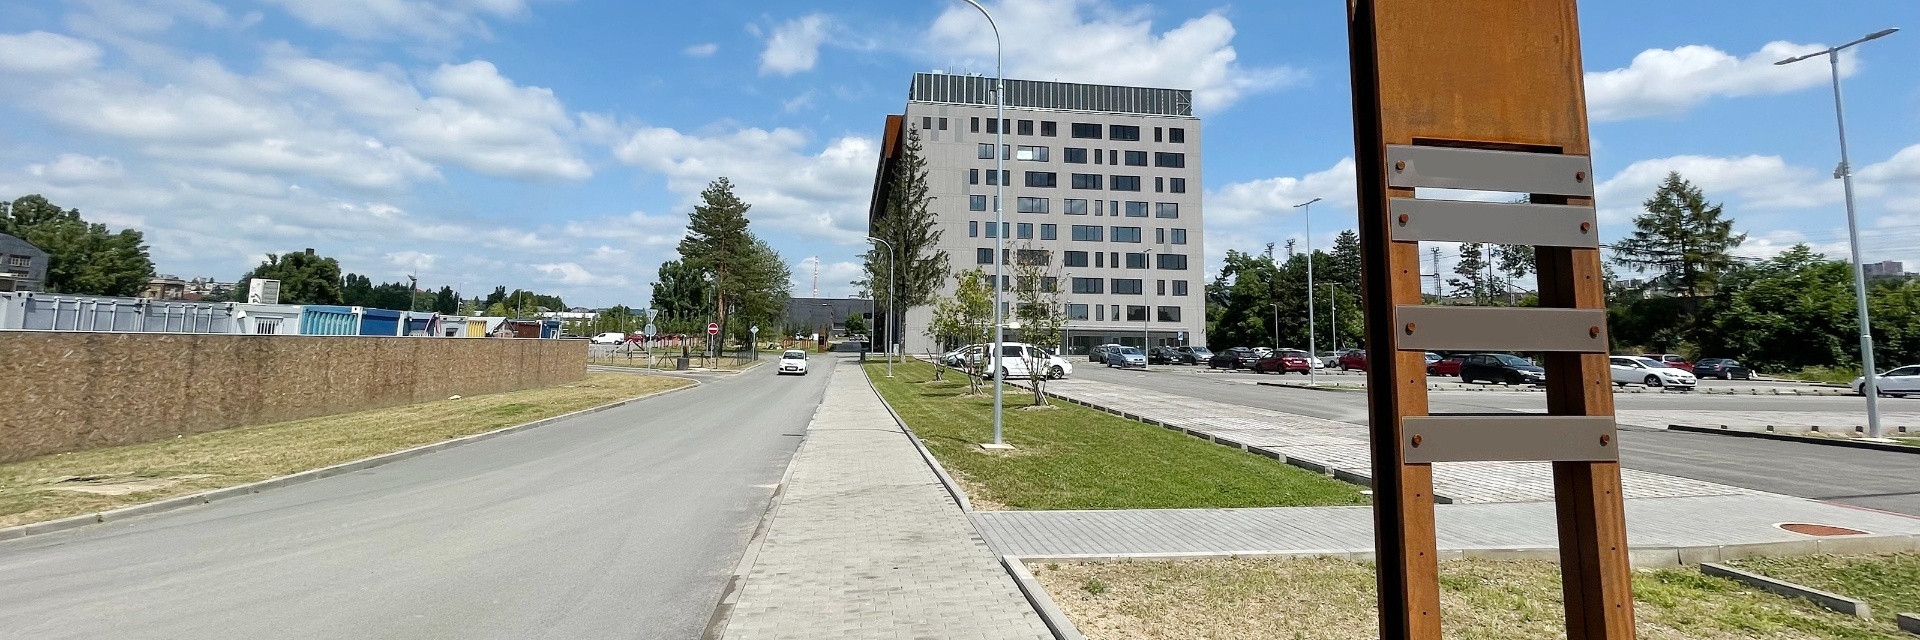 Pronájem kancelářských prostor 415 m², Nová Zbrojovka, ulice Lazaretní, Brno - Židenice